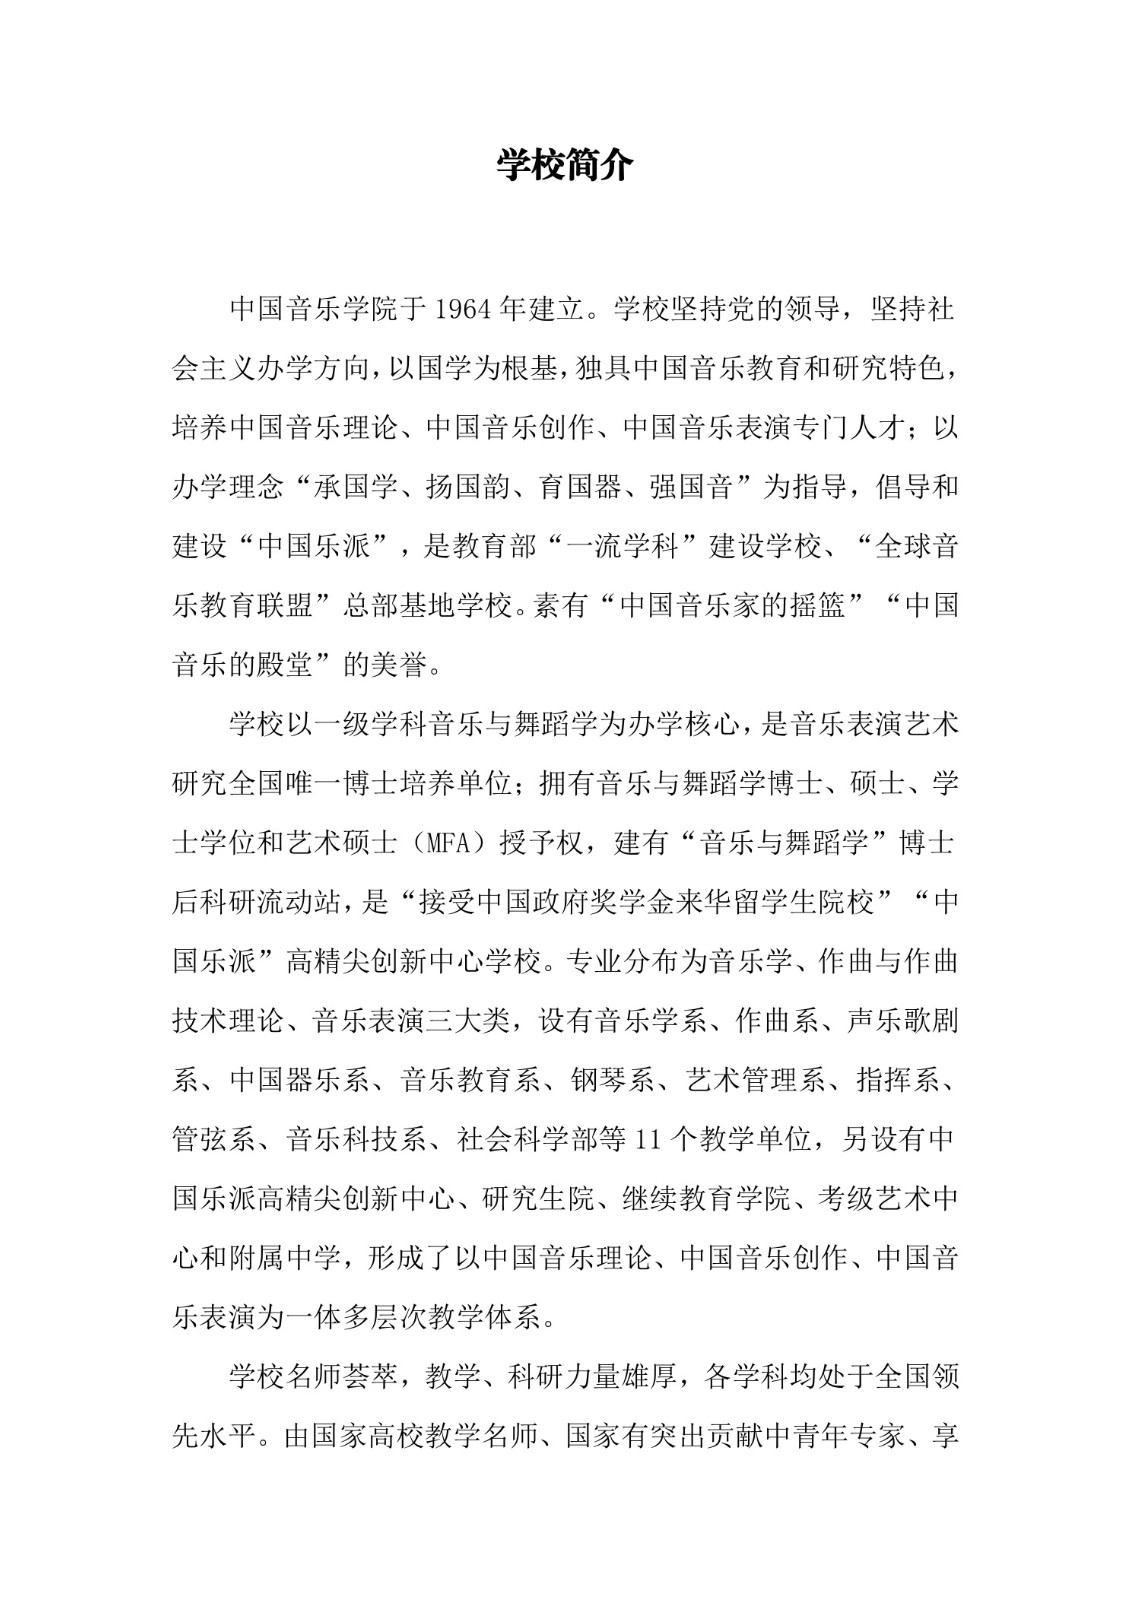 中国音乐学院本科招生简章（2018年）-page2.jpeg